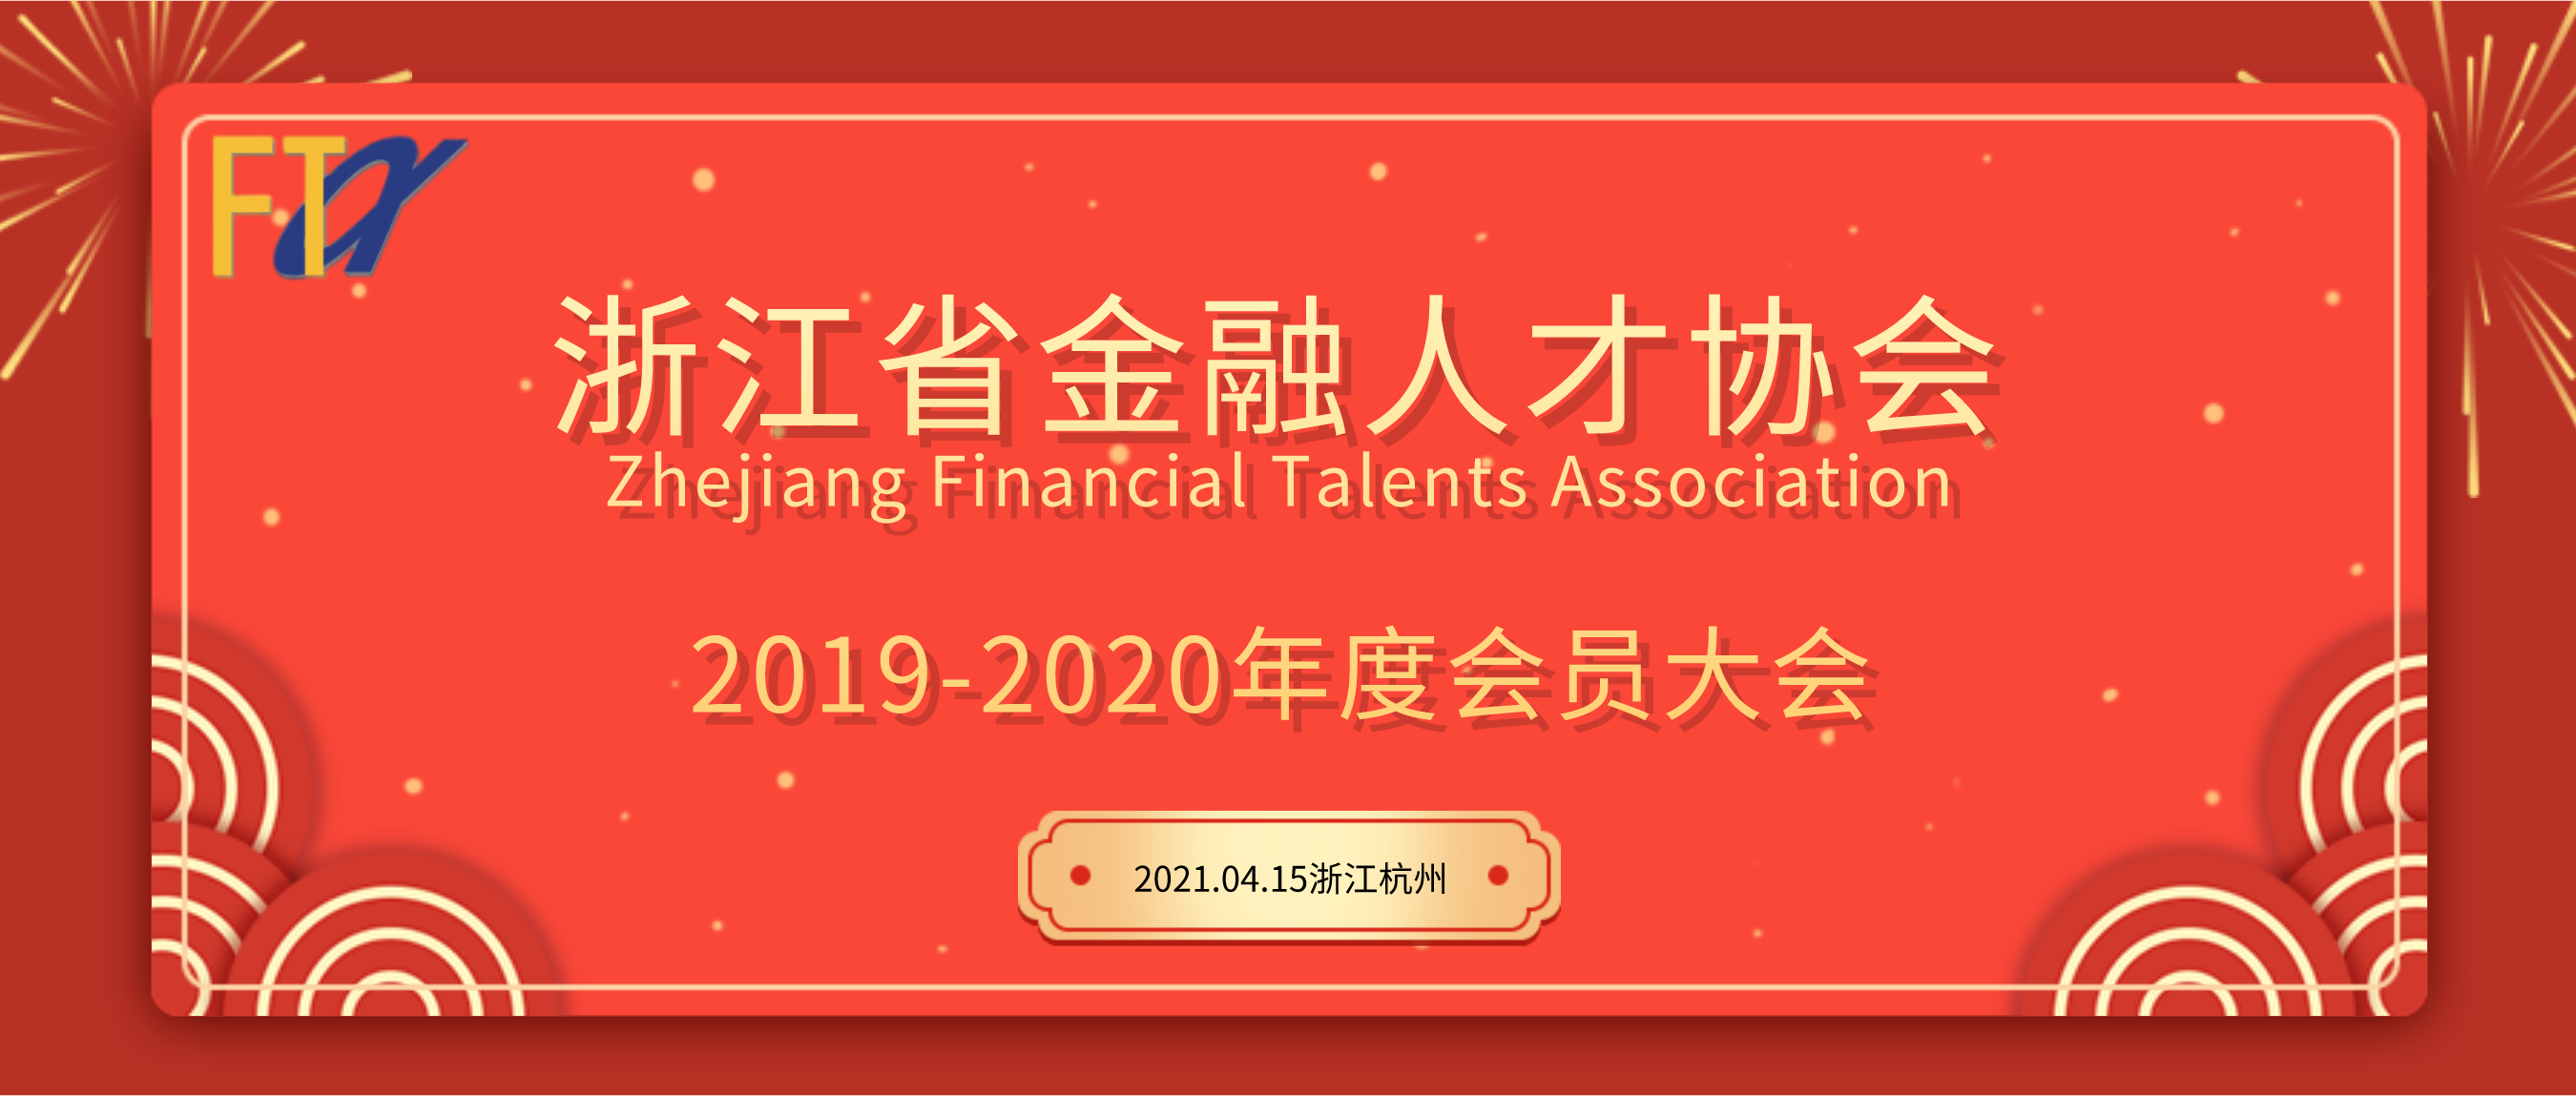 浙江省金融人才协会2019-2020年度会员大会圆满举办